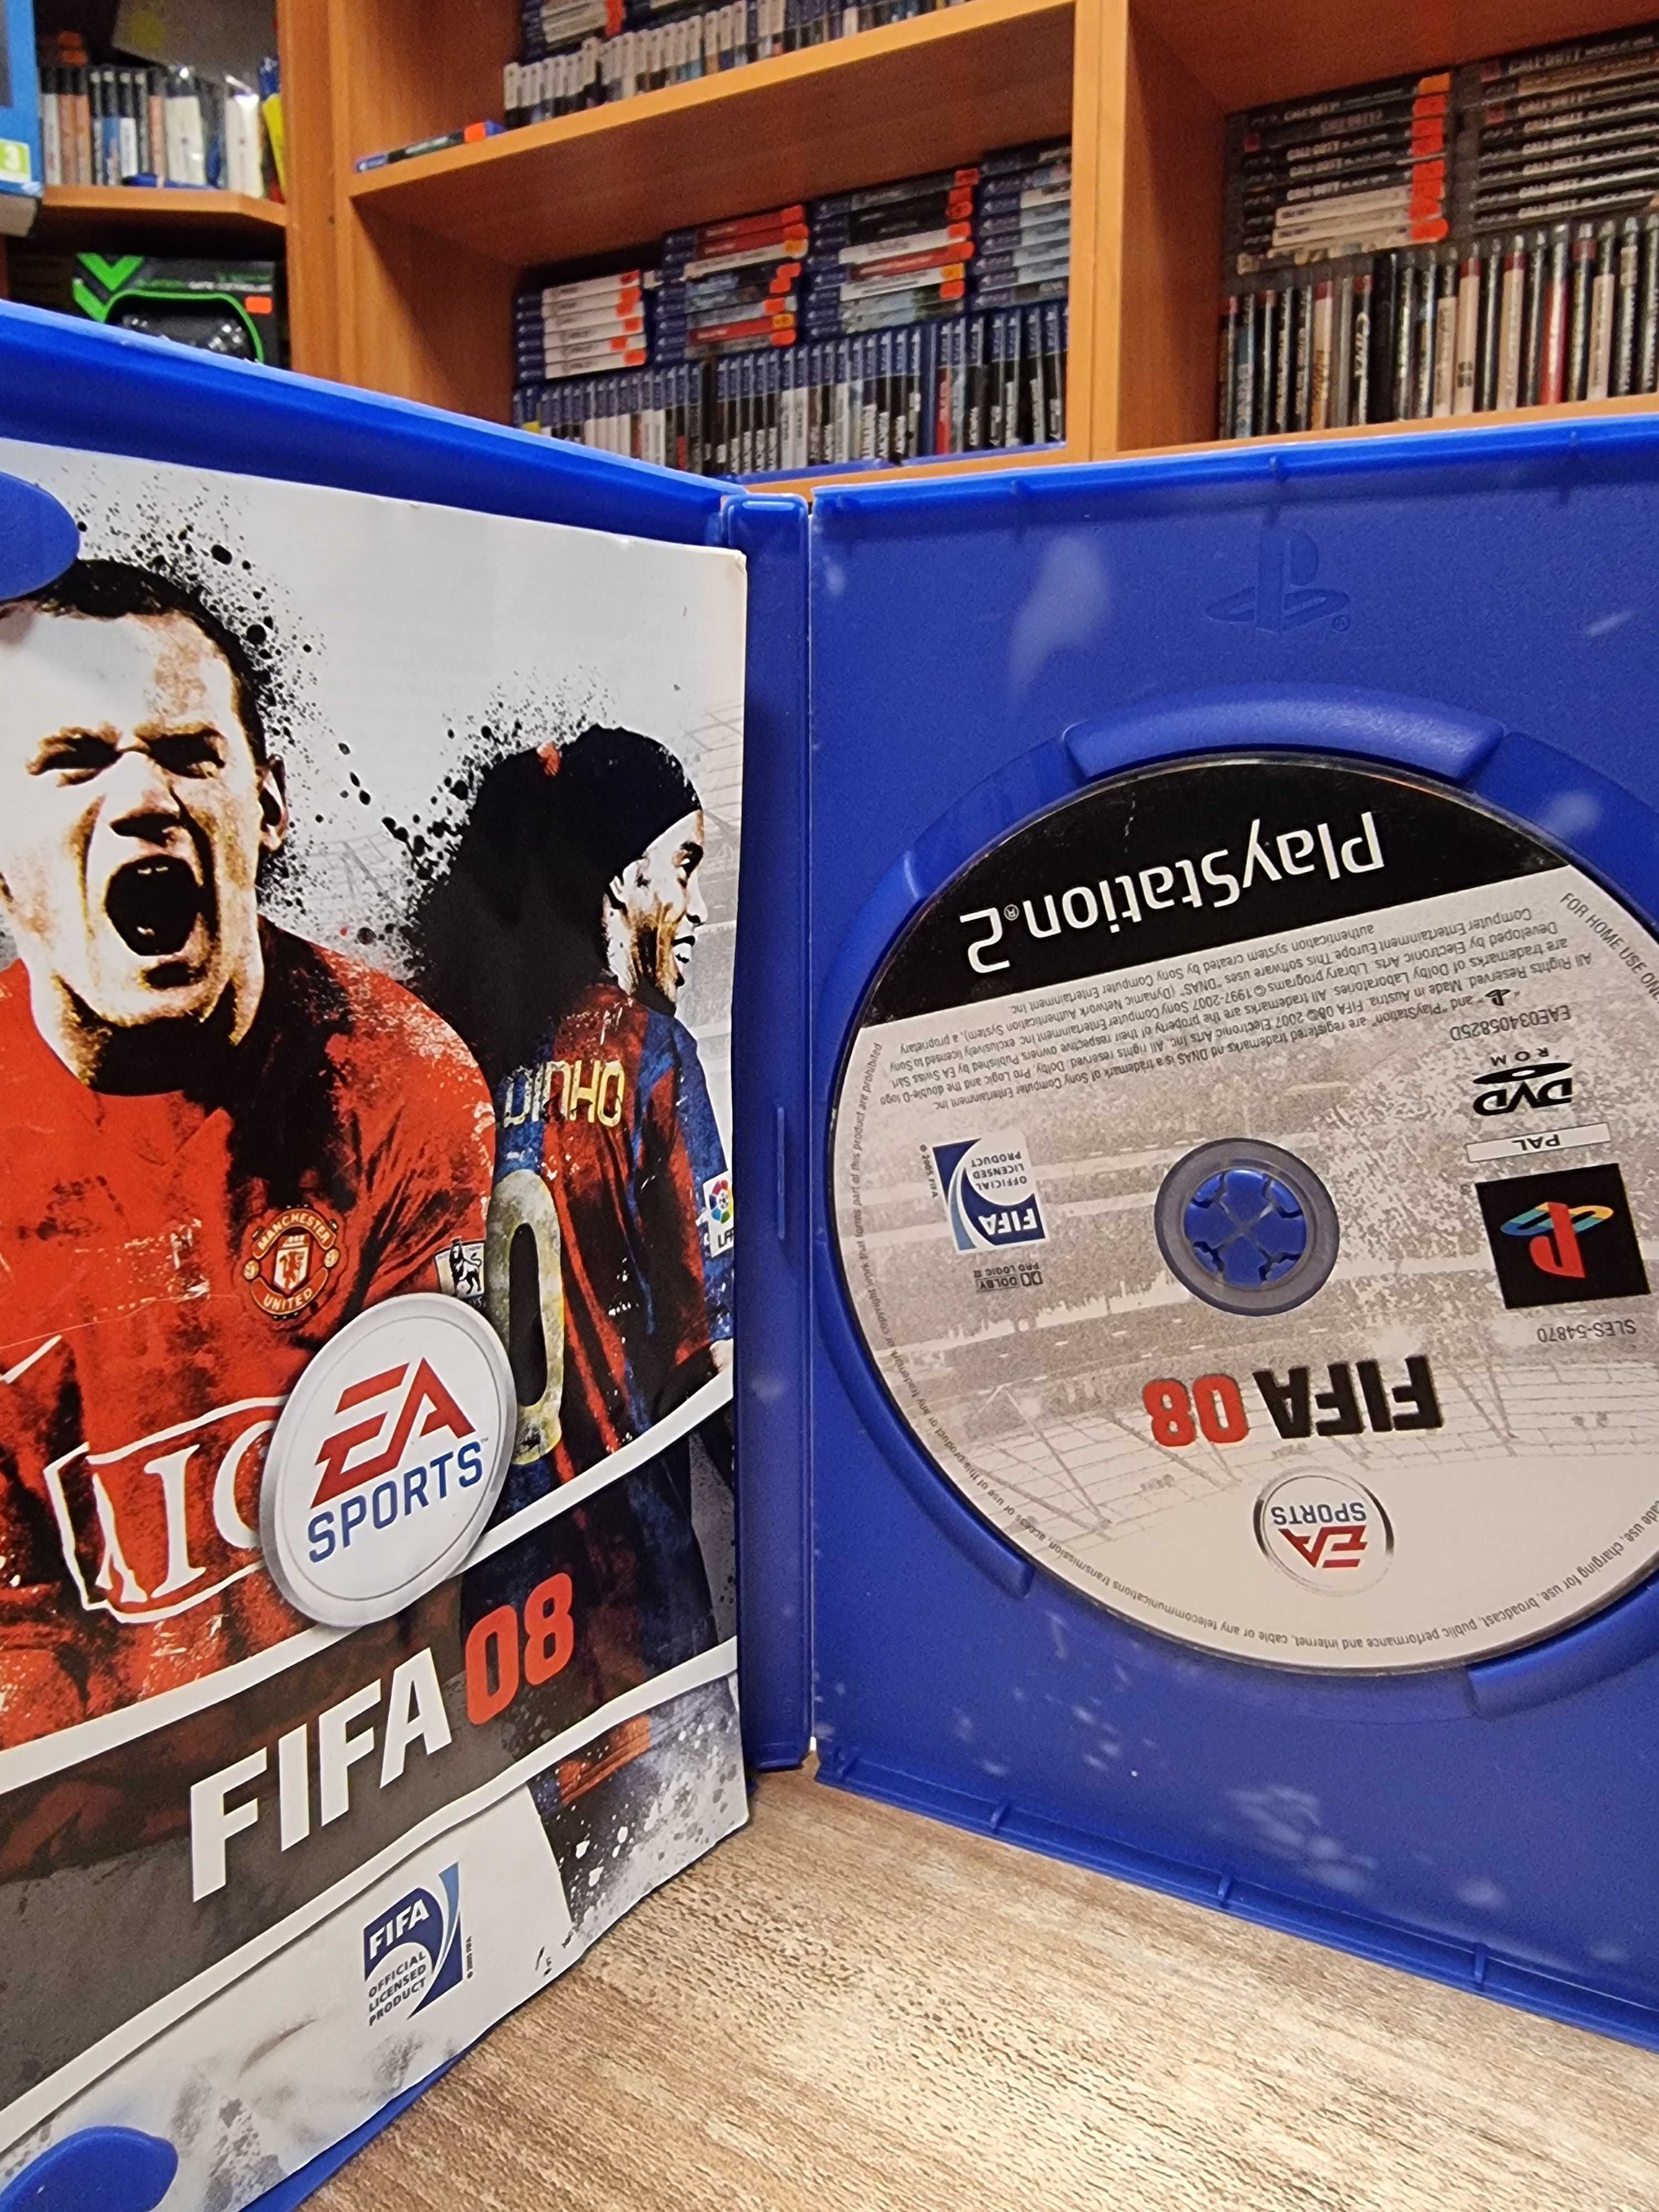 FIFA 08 PS2, Sklep Wysyłka Wymiana